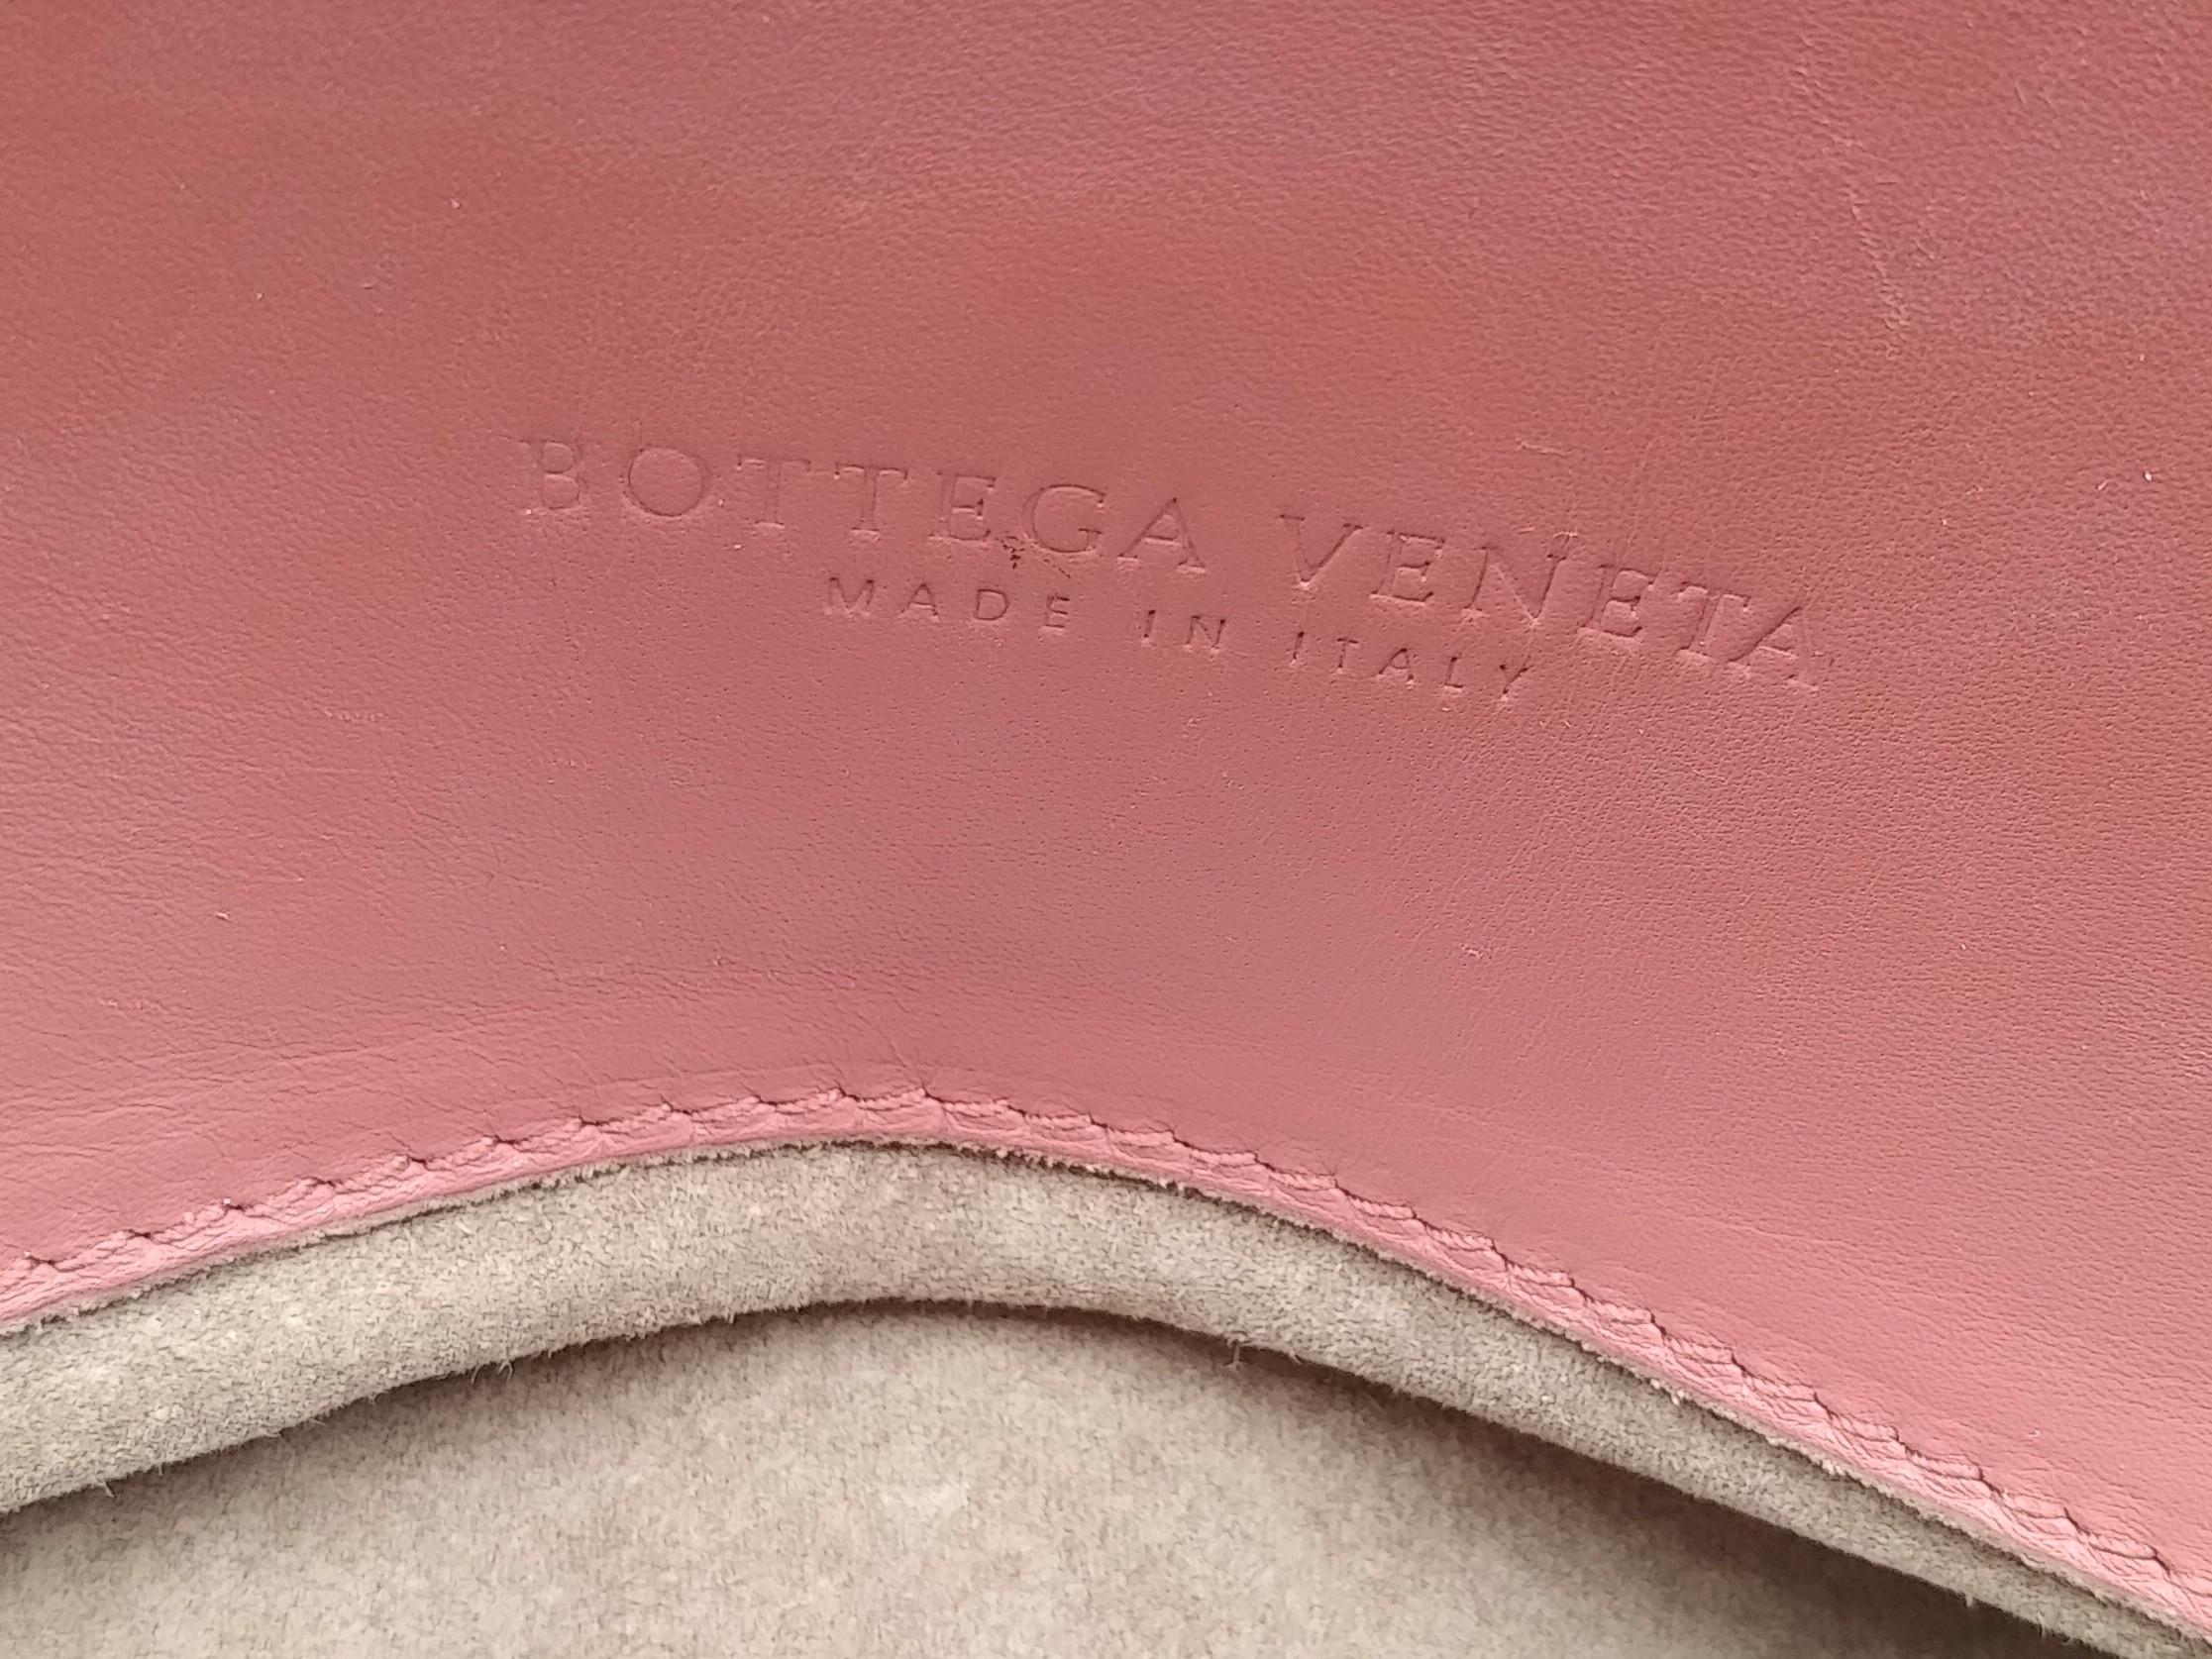 Bottega Veneta Intrecciato Woven Nappa Leather Roma Tote Bag 9